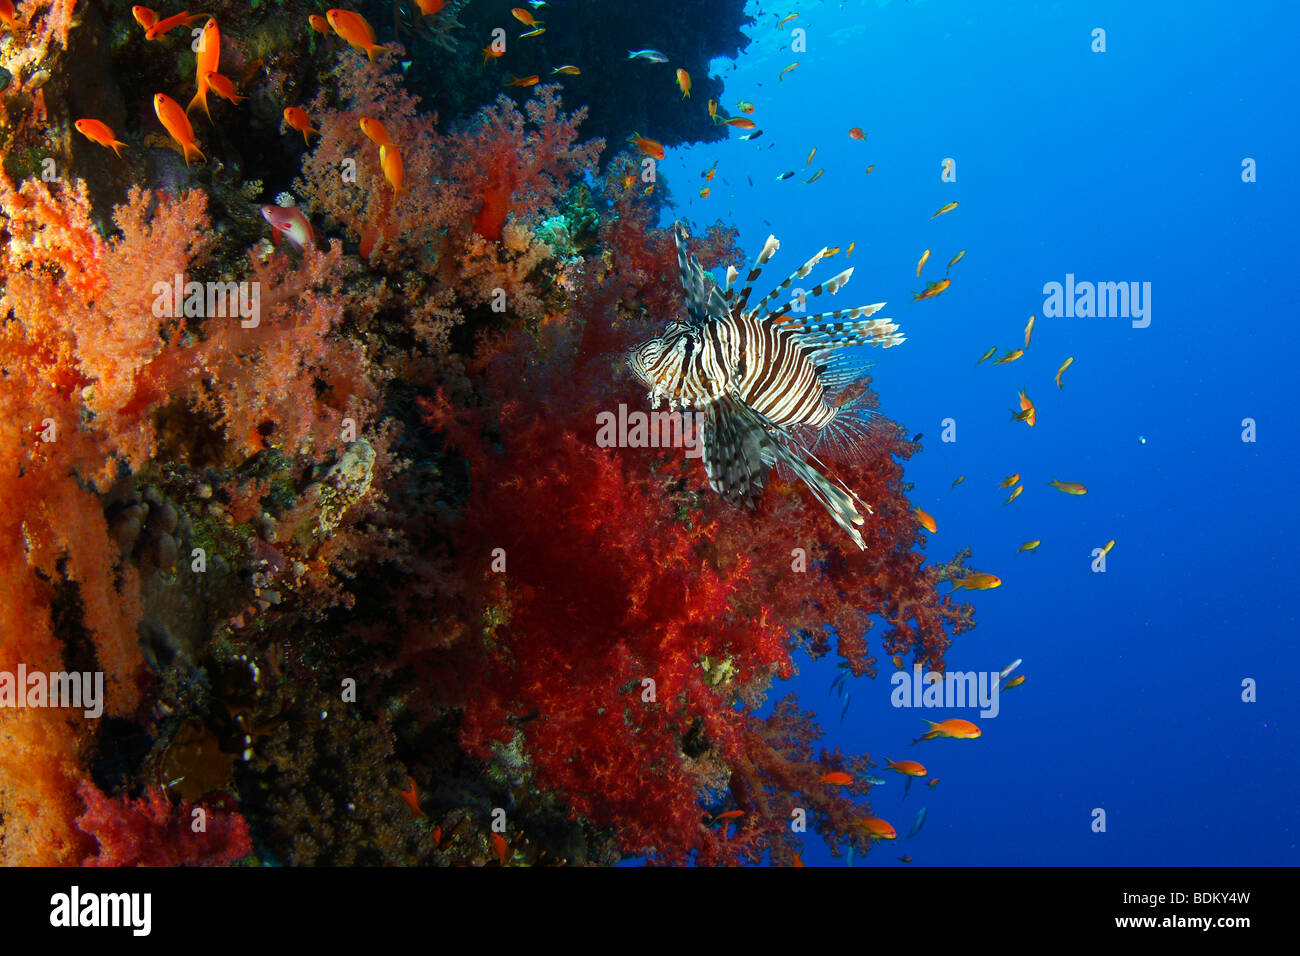 Eine gemeinsame Rotfeuerfische schwimmen entlang einer wunderschönen Riff Wand bedeckt mit bunten roten Weichkorallen und Fee rot Basslets. Stockfoto